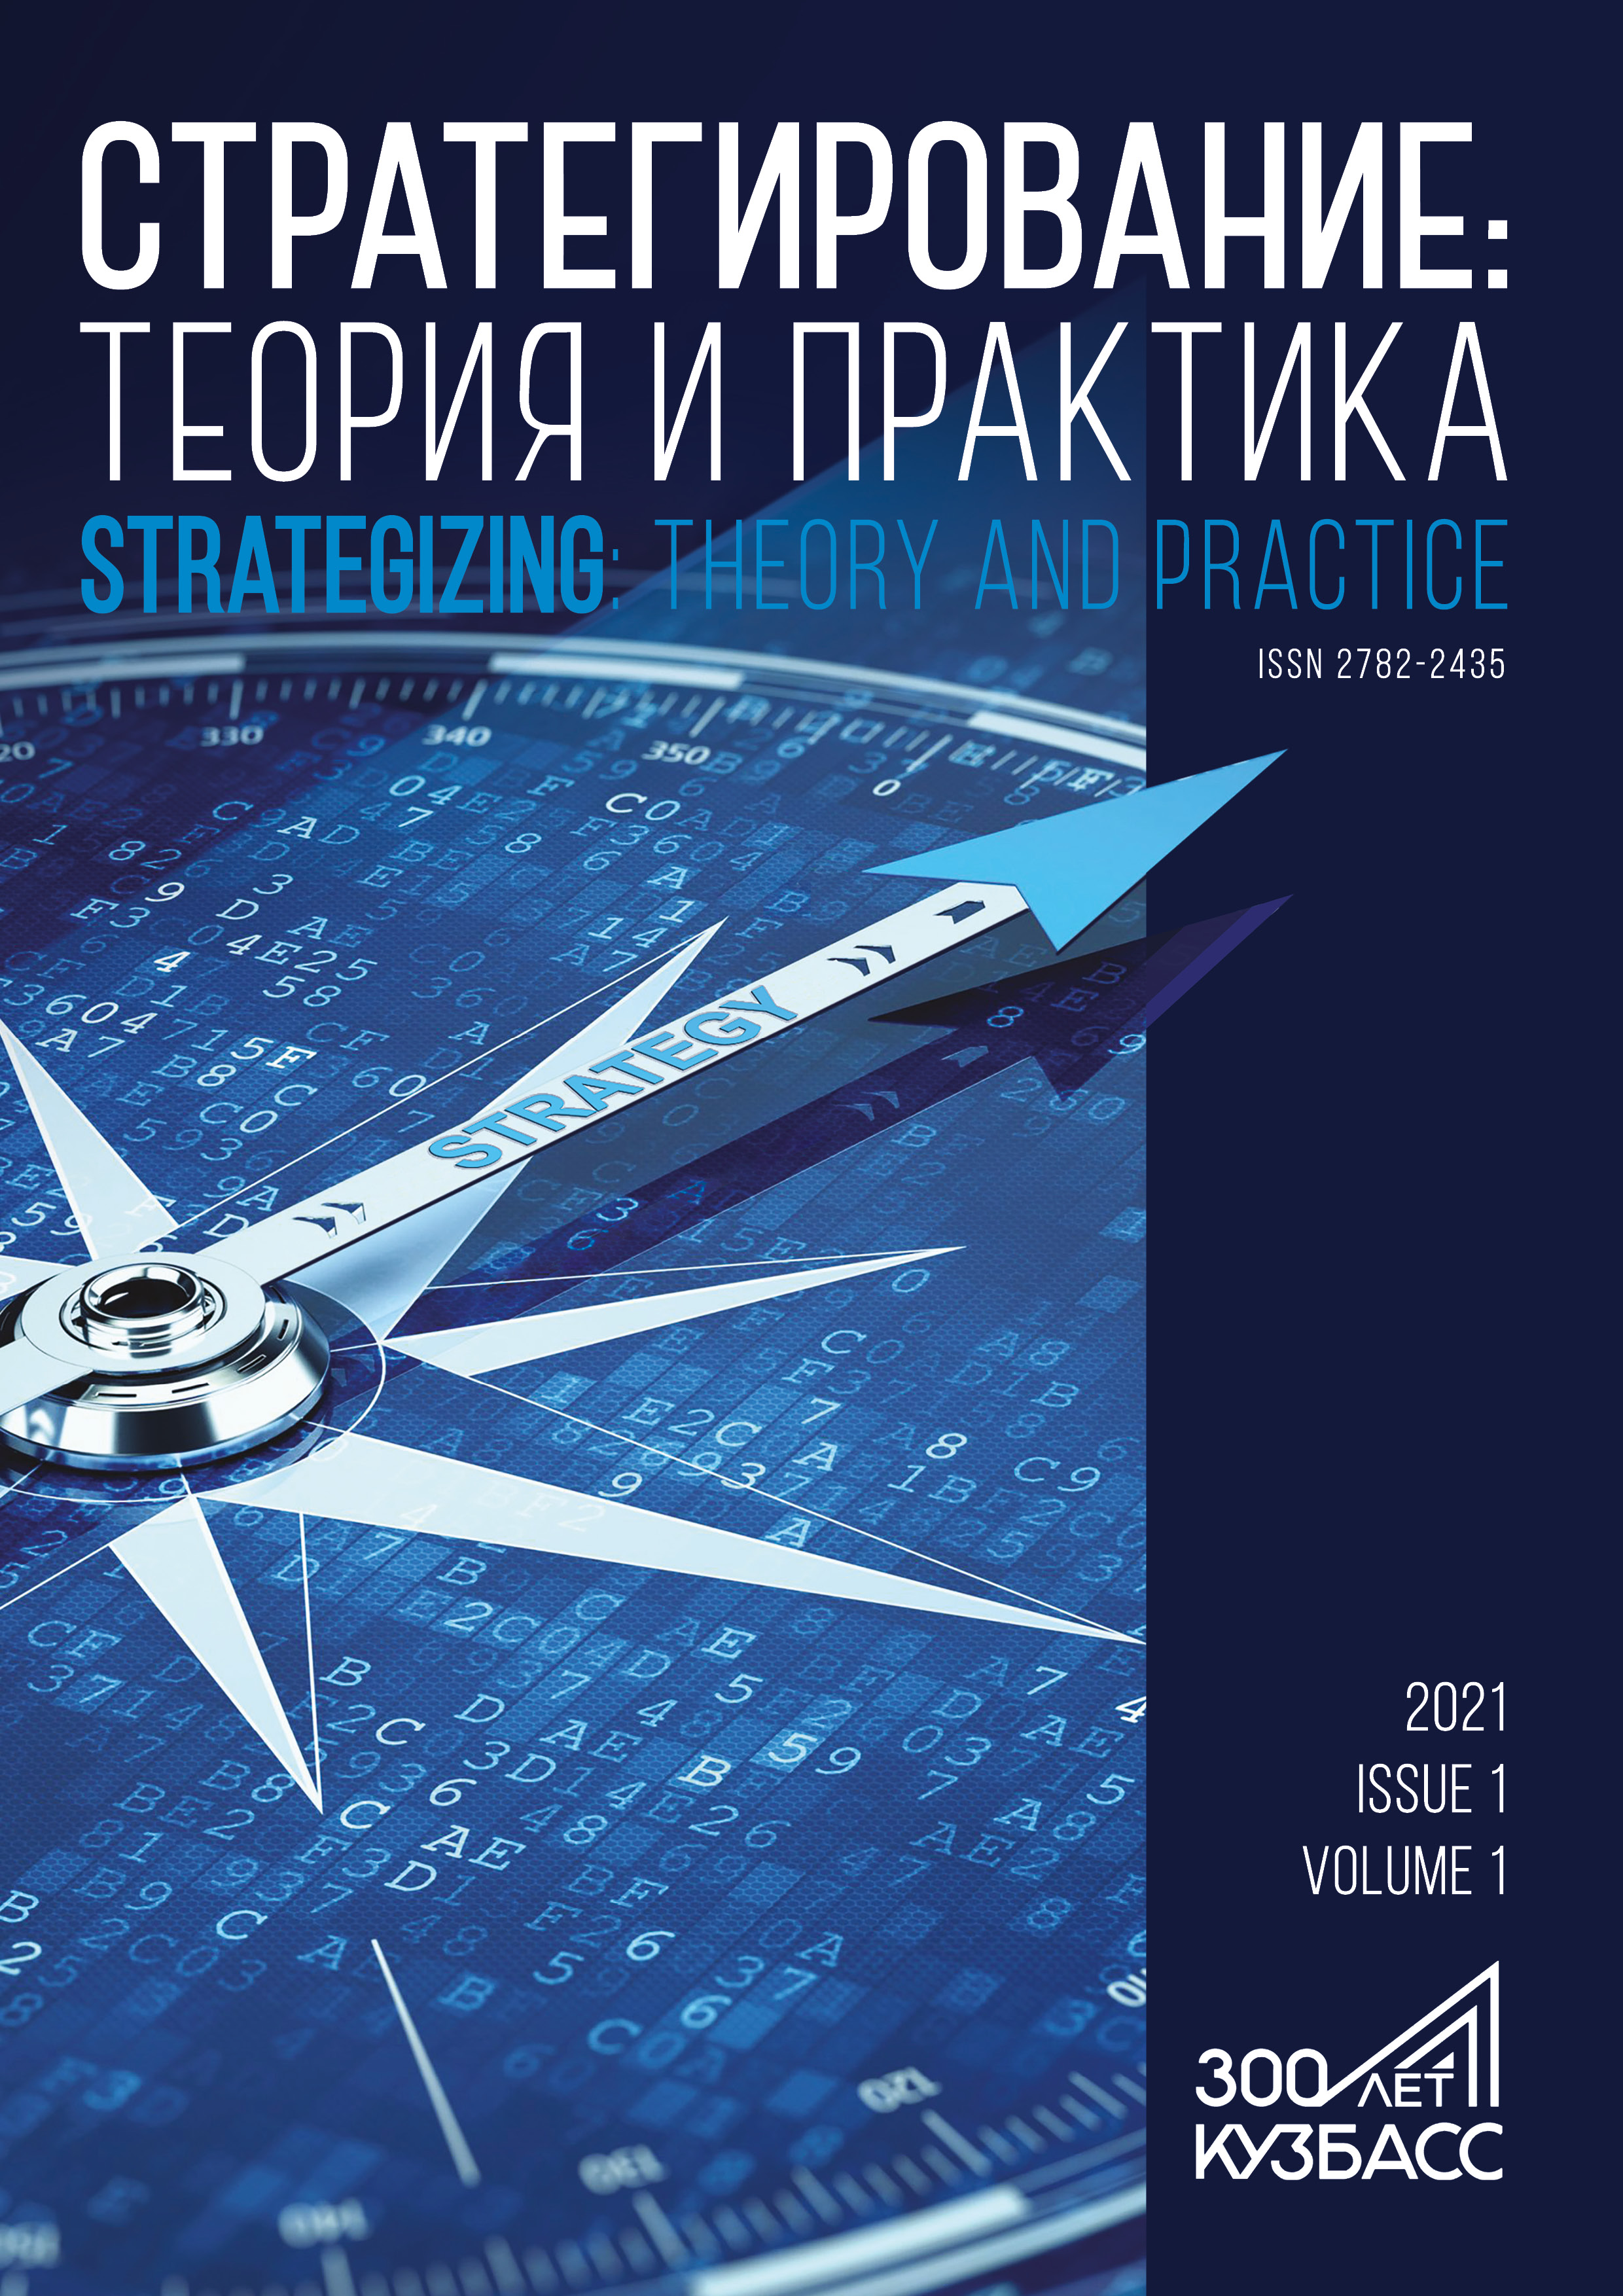             Стратегия Кузбасса на 50-летнюю перспективу в книгах Библиотеки «Стратегия Кузбасса»
    